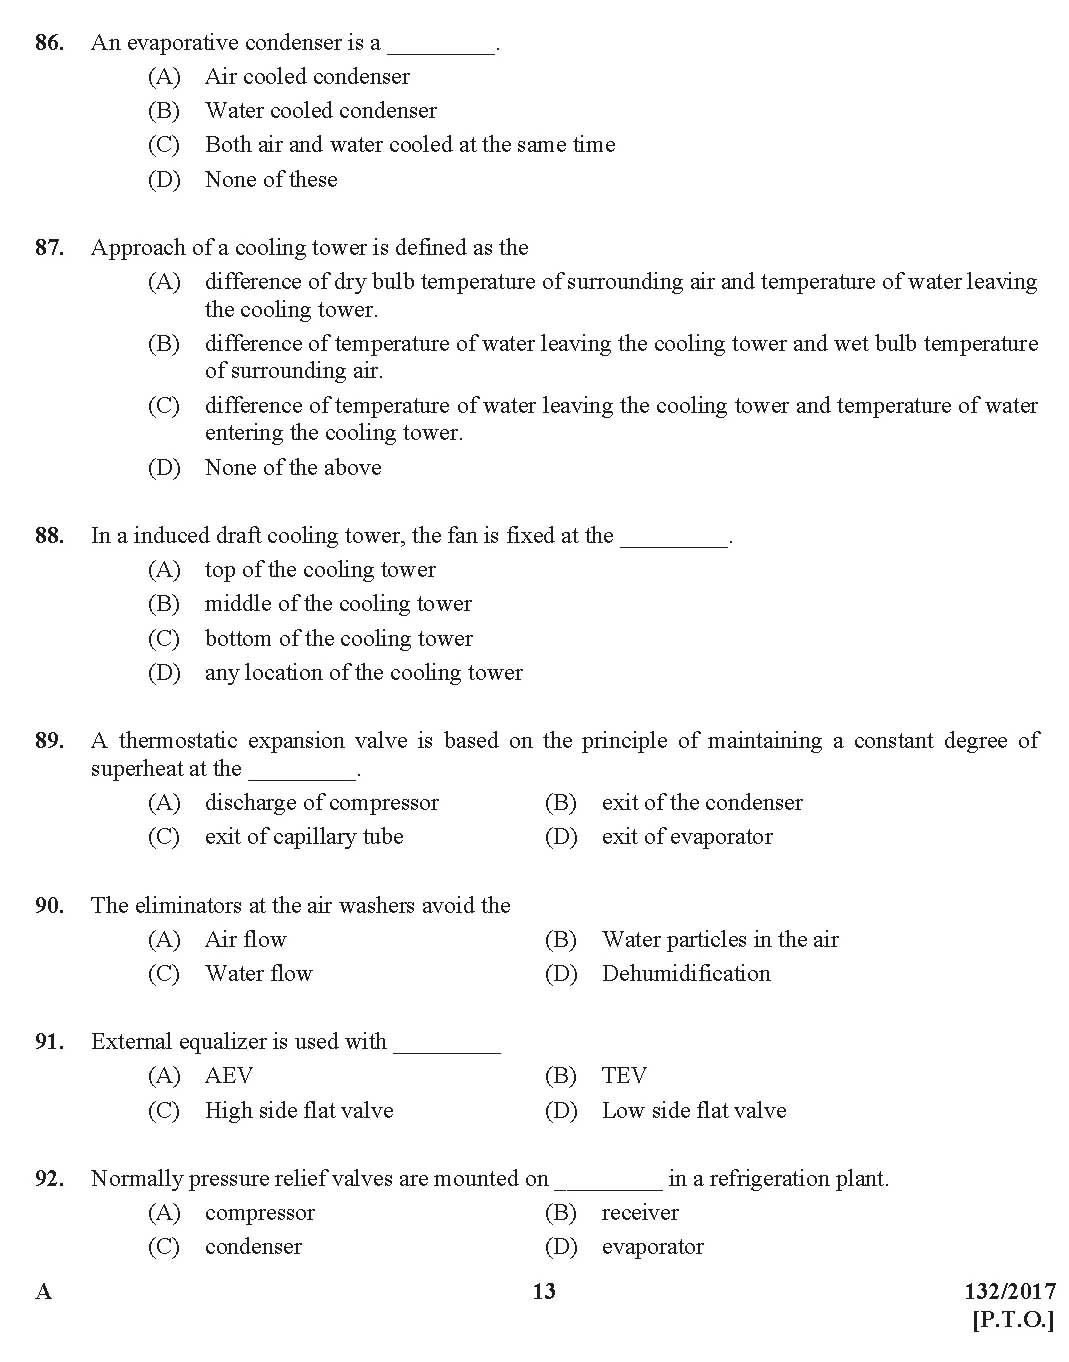 Kerala PSC AC Mechanic Exam Question Code 1322017 12